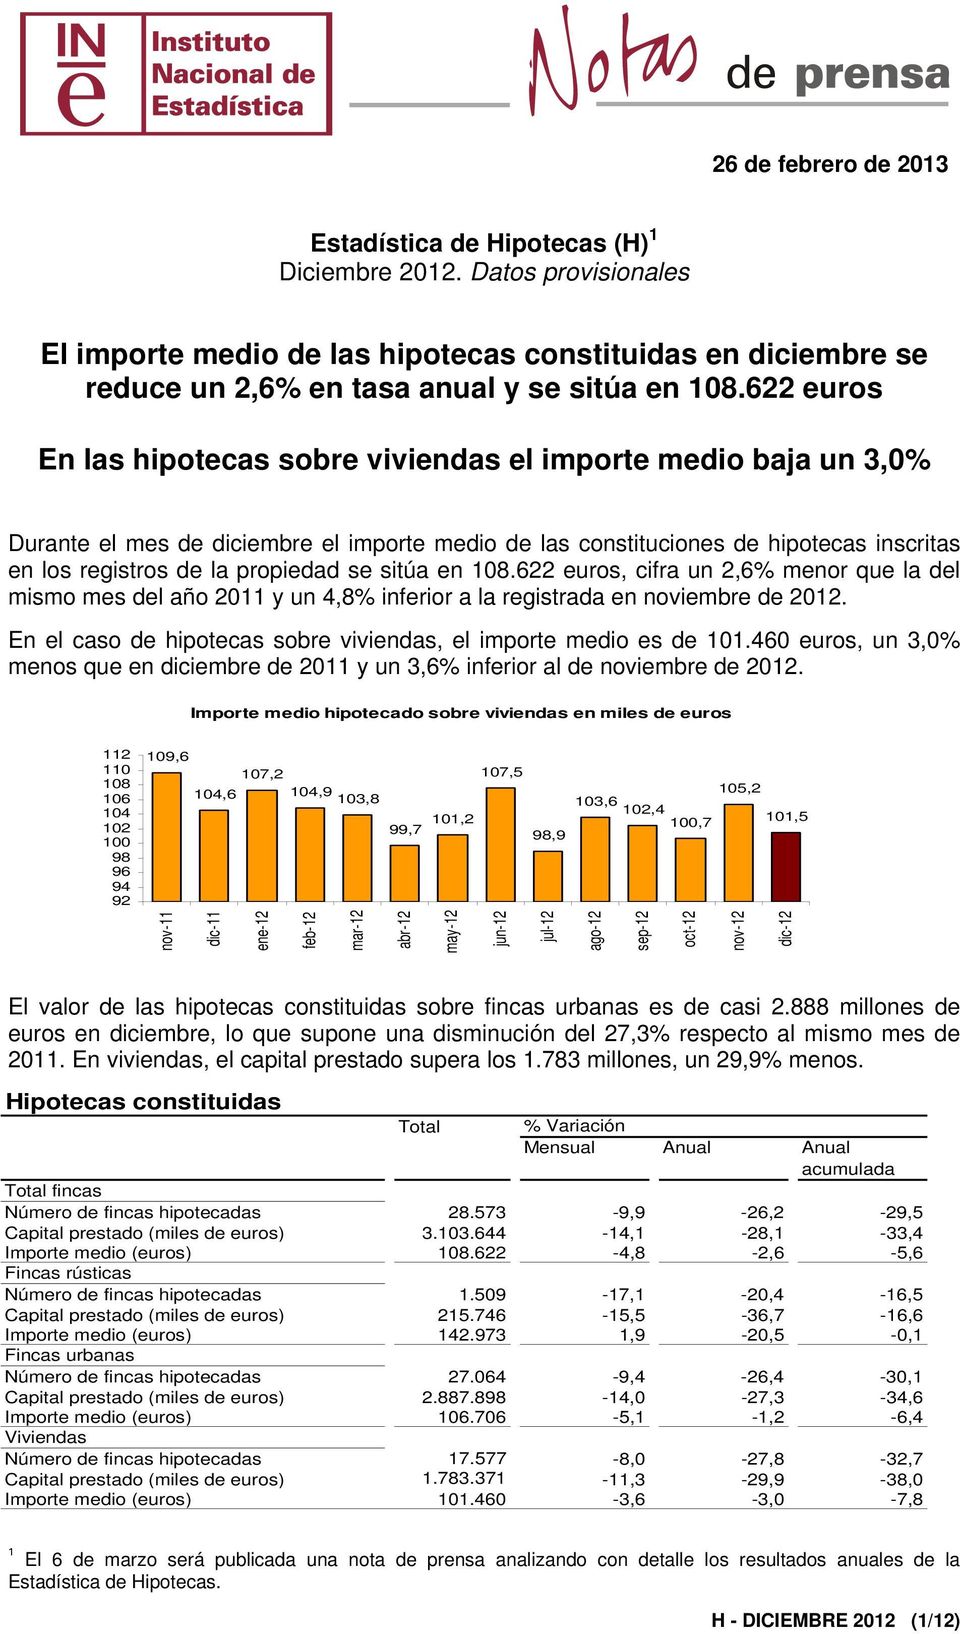 sitúa en 108.622 euros, cifra un 2,6% menor que la del mismo mes del año 2011 y un 4,8% inferior a la registrada en noviembre de 2012.